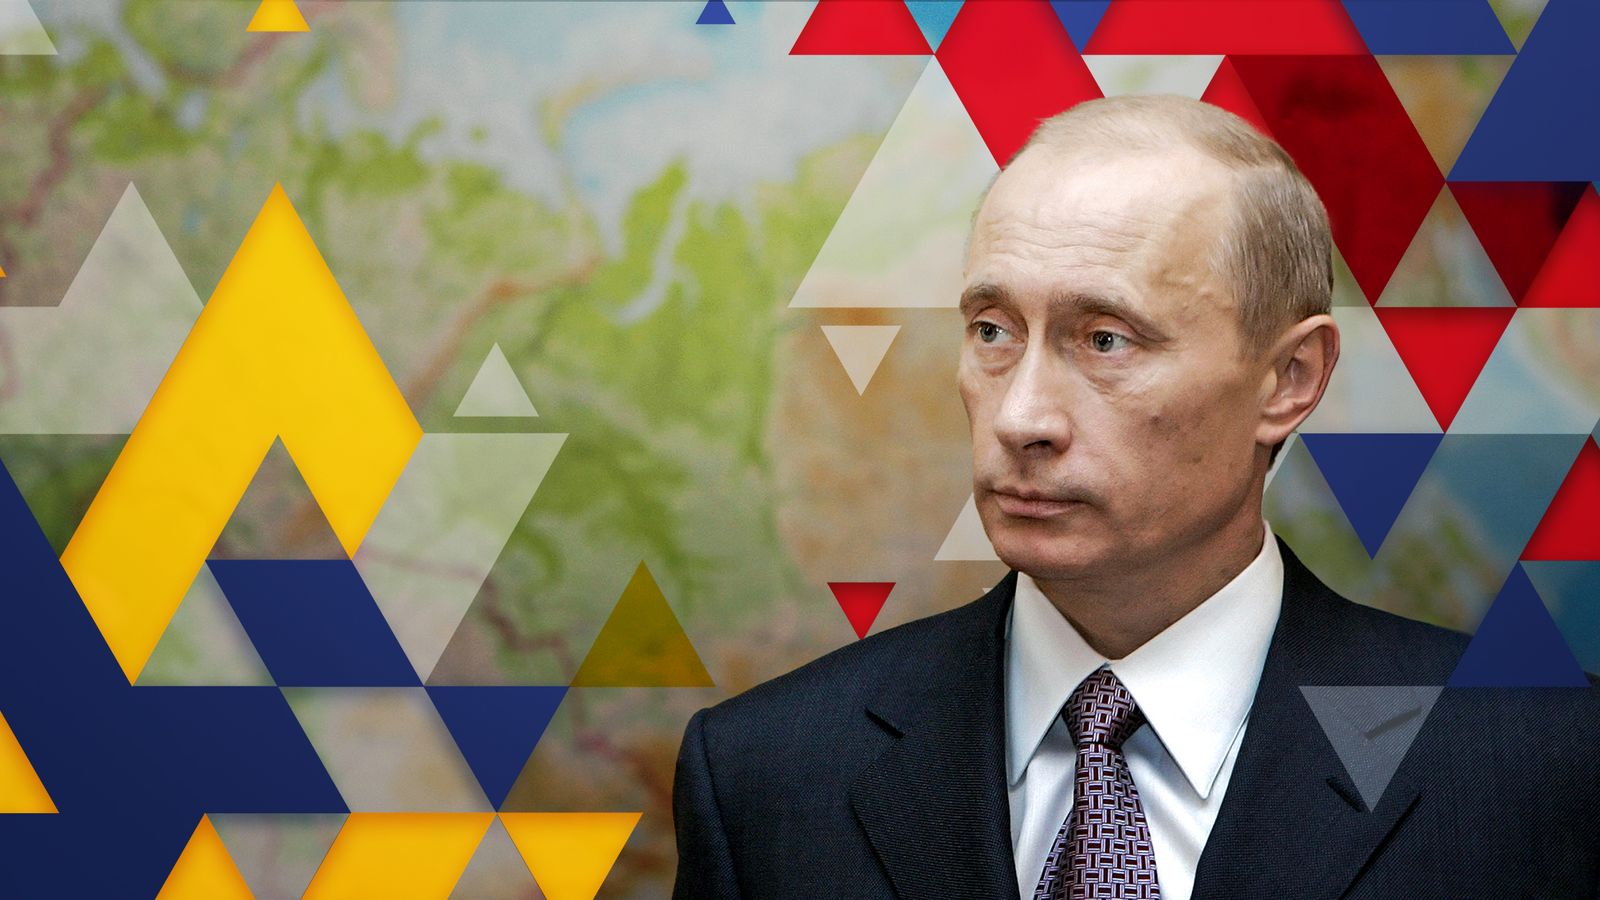 Война на Украине: Путин изучает историю — так что же он может сказать о возможных последствиях российского вторжения?  |  Мировые новости